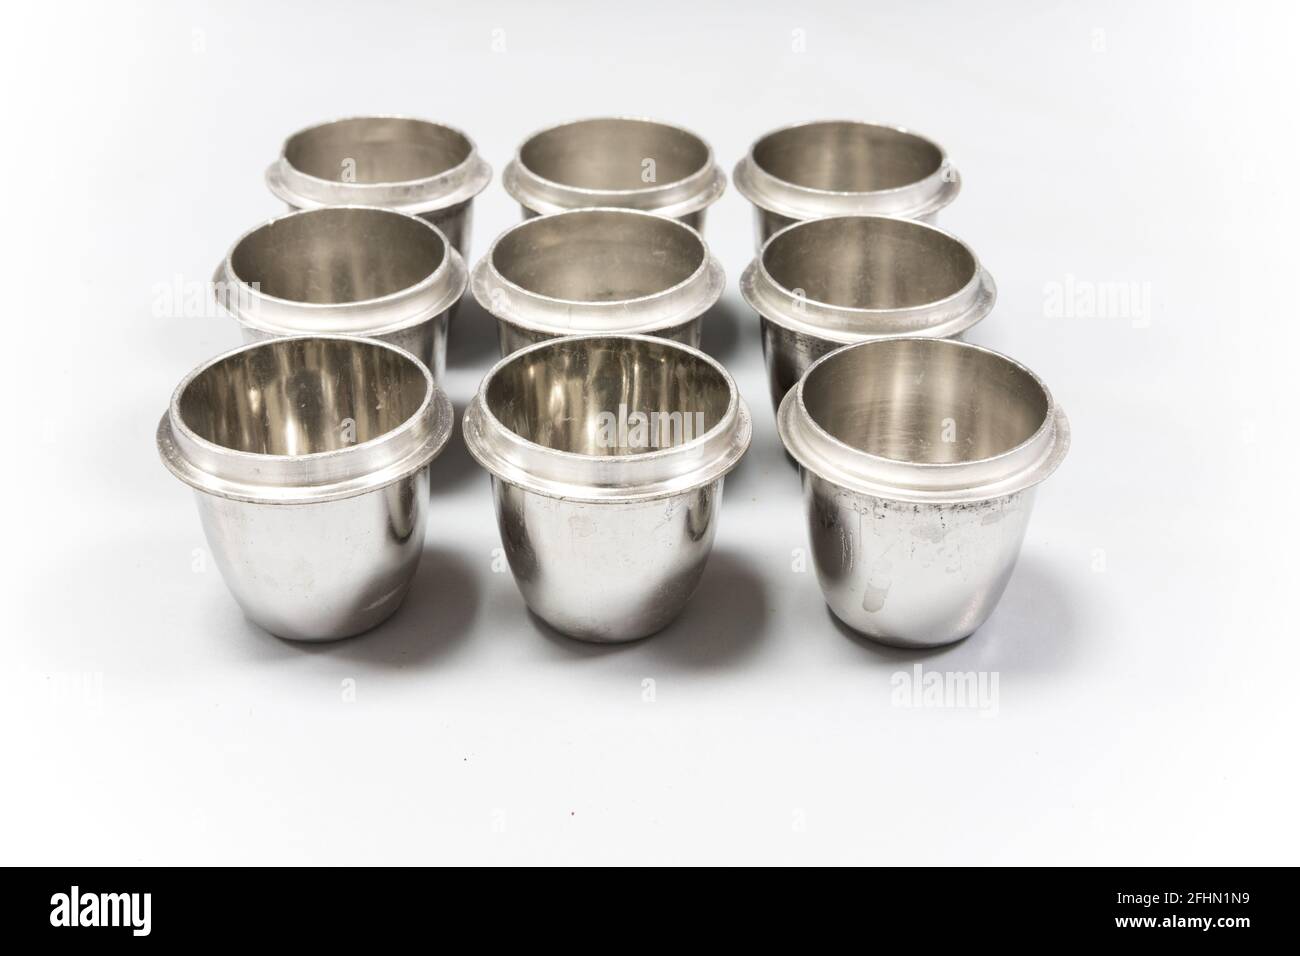 Crogioli di platino utilizzati per la preparazione dei campioni in un laboratorio di chimica analitica. Apparecchiature da laboratorio in metallo lucido Foto Stock